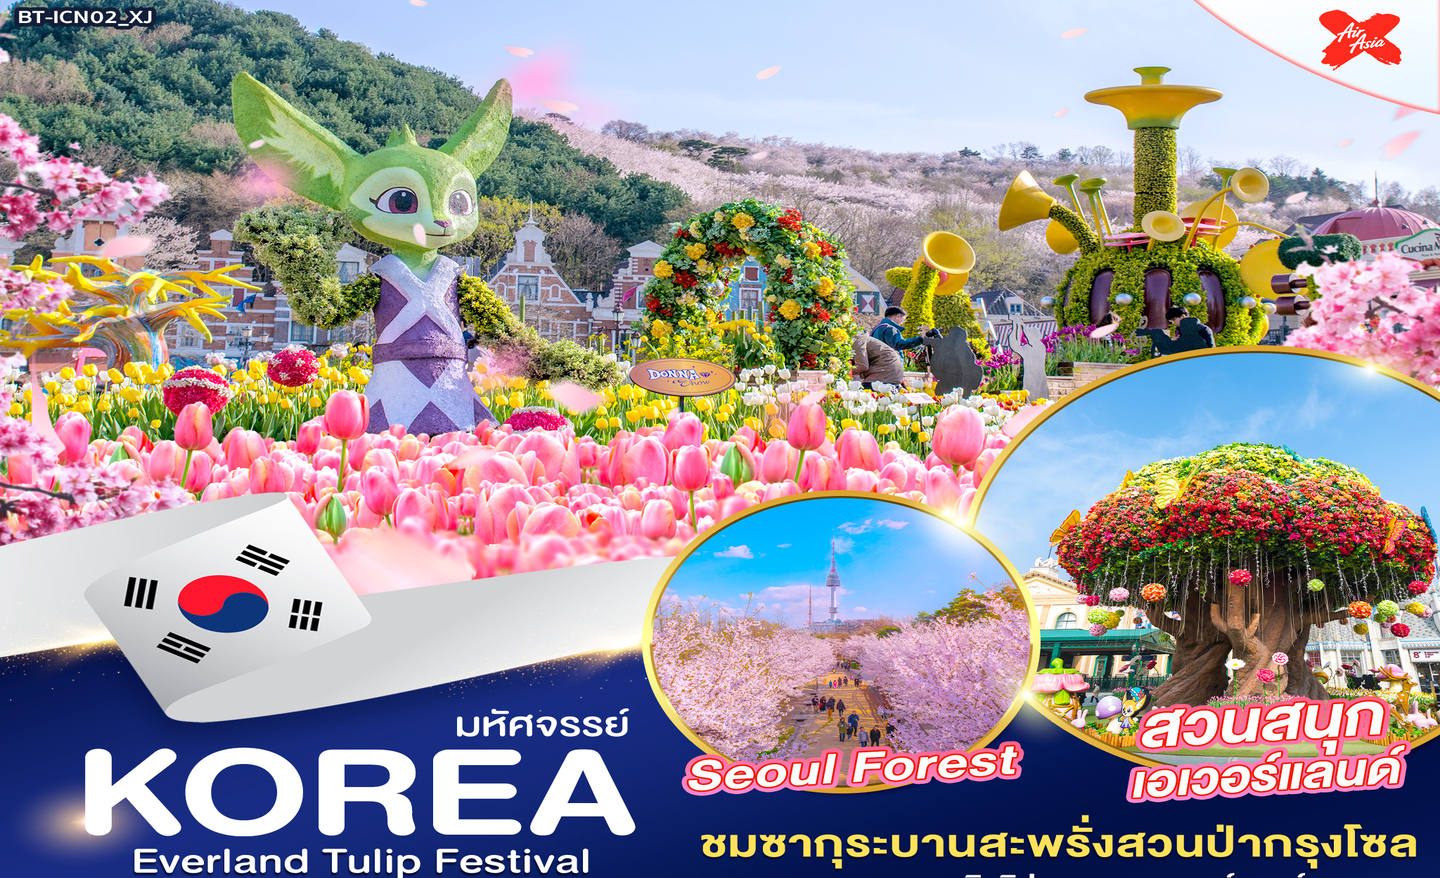 ทัวร์เกาหลี มหัศจรรย์ Korea Everland Tulip Festival (เม.ย.-พ.ค.66)